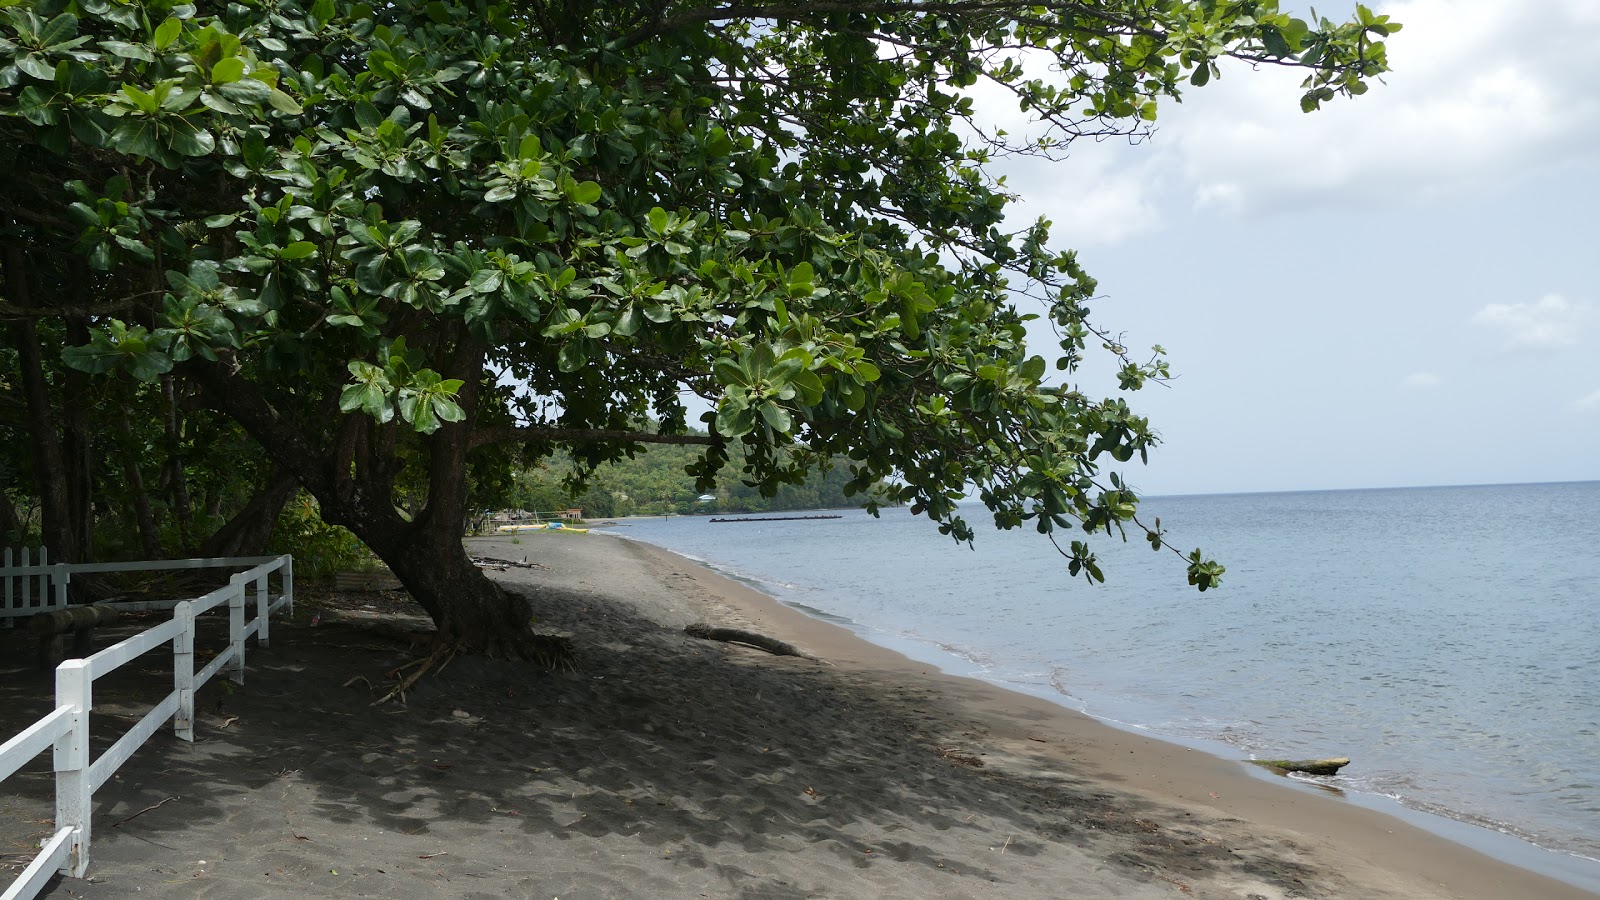 Coconut Beach'in fotoğrafı geniş plaj ile birlikte